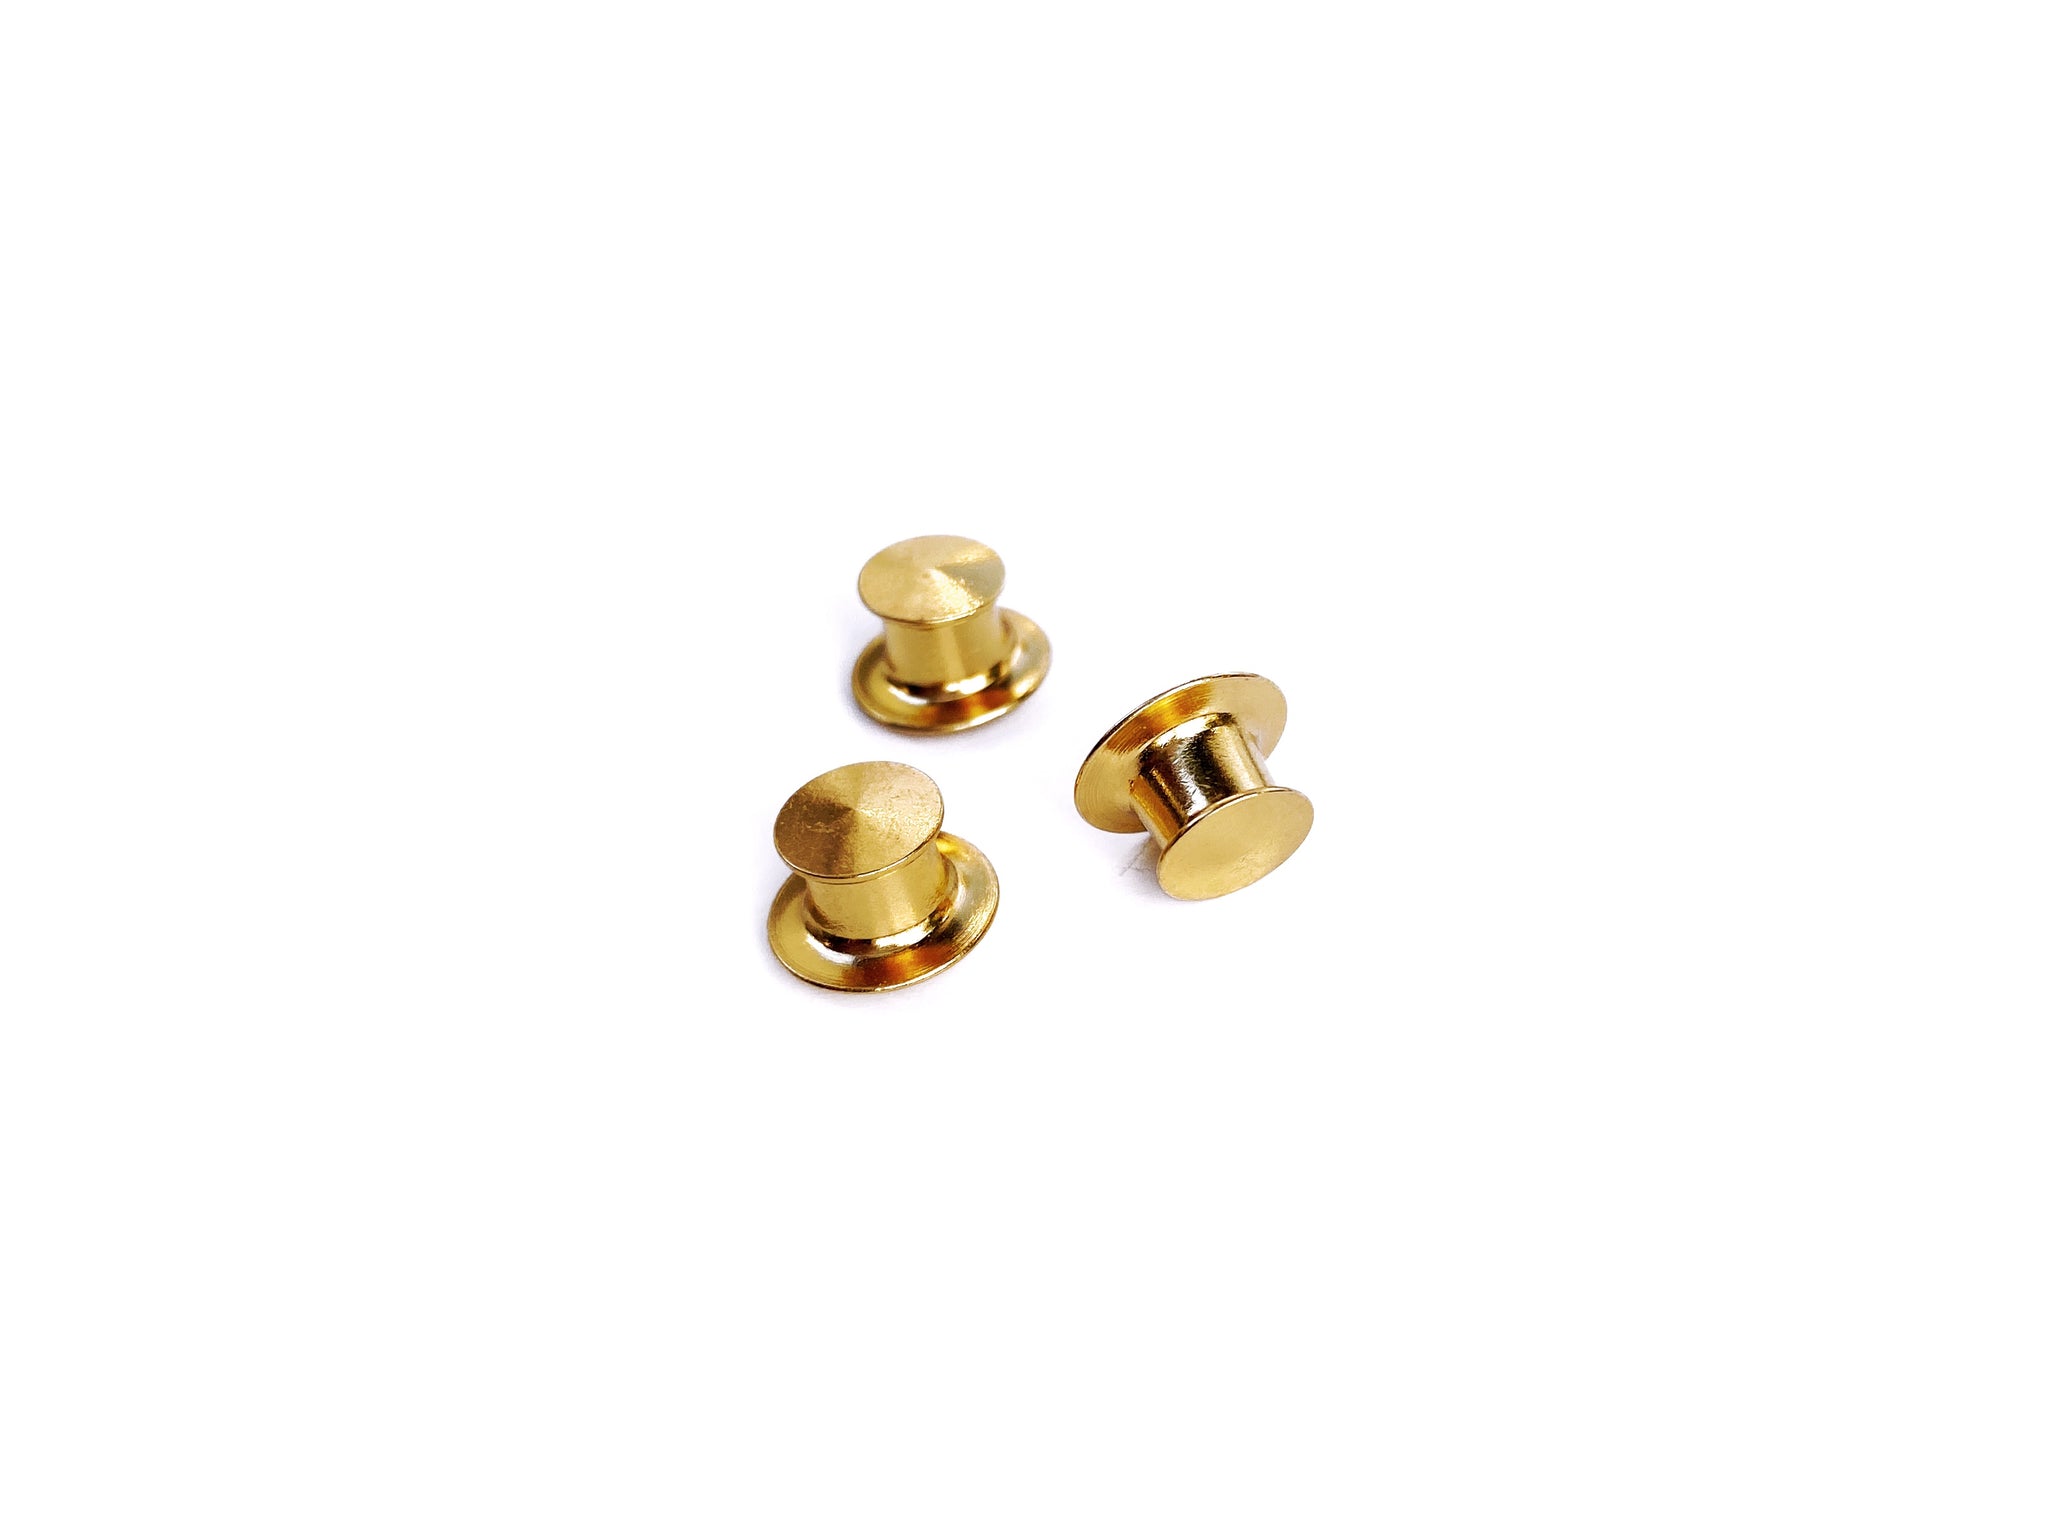 Gold Deluxe Locking Pin Backing – kela designs